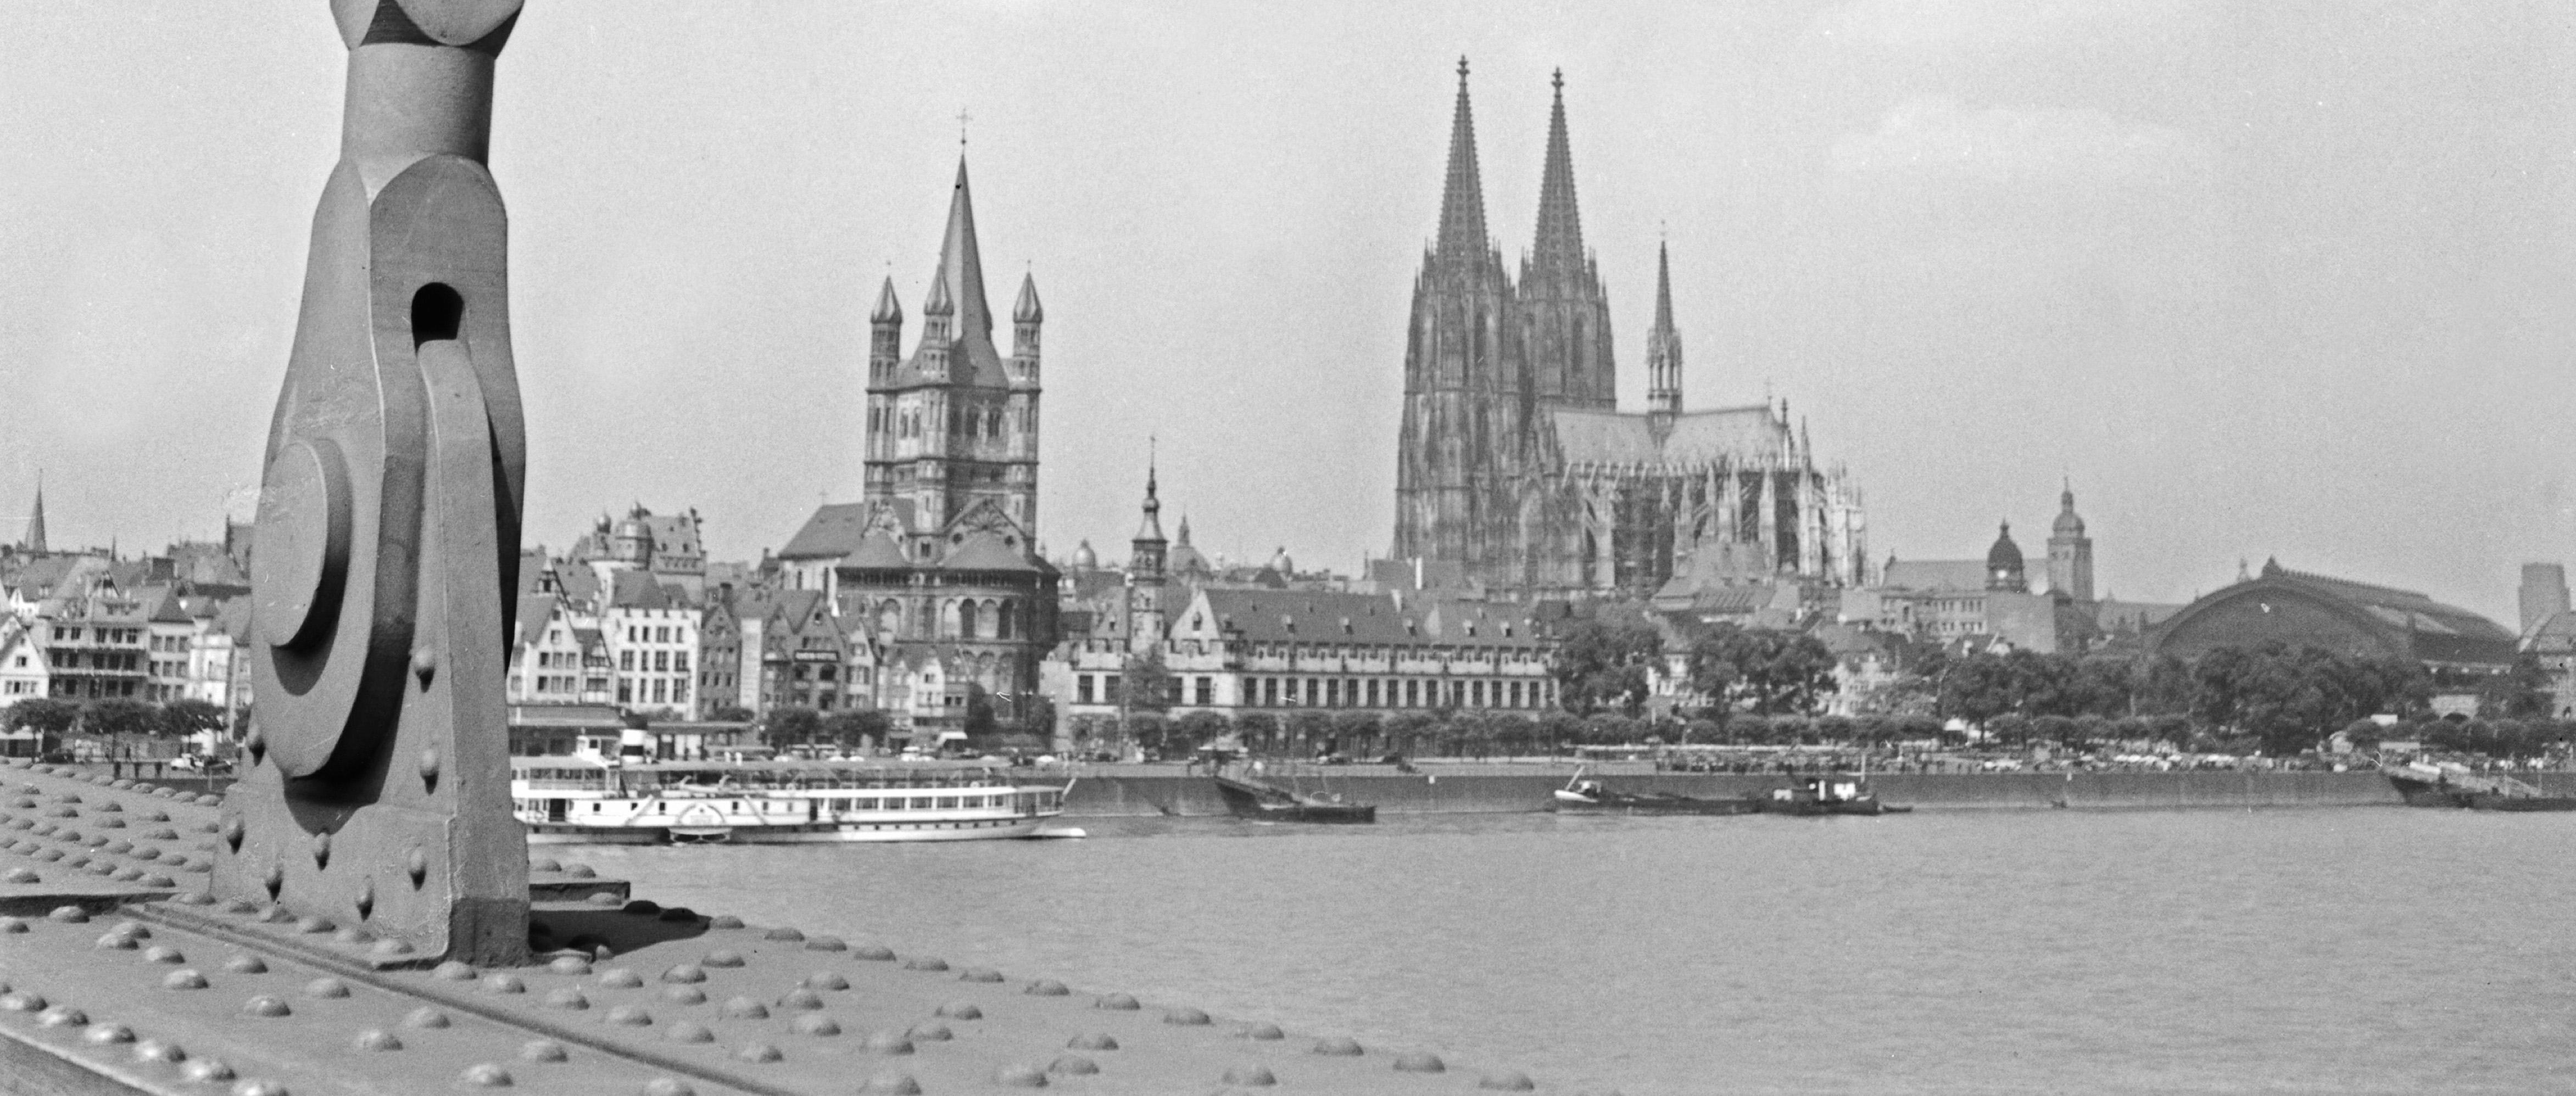 Cologne, Allemagne 1935, Imprimé ultérieurement - Photograph de Karl Heinrich Lämmel